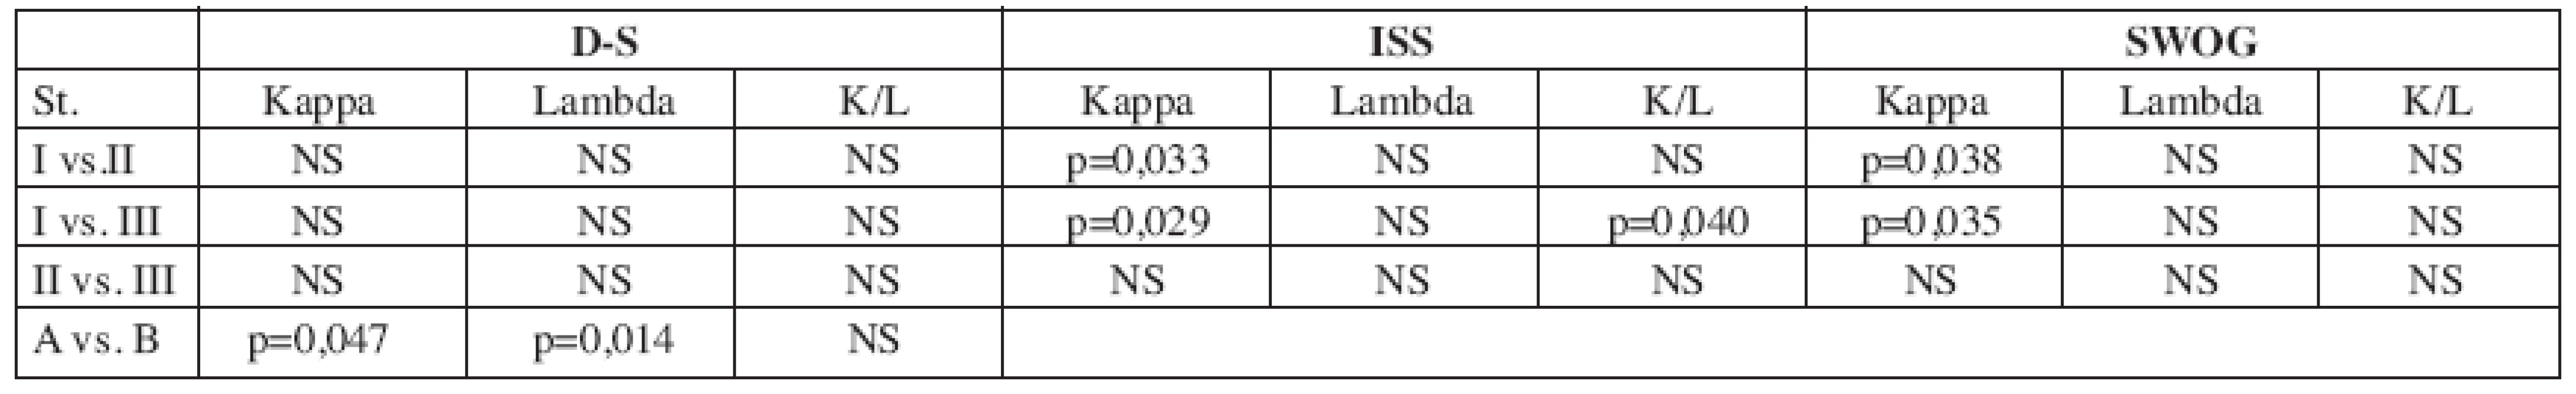 Srovnání sérových hladin volných lehkých řetězců mezi jednotlivými stadii stážovacích systémů ve skupině „kappa“ (n = 99).